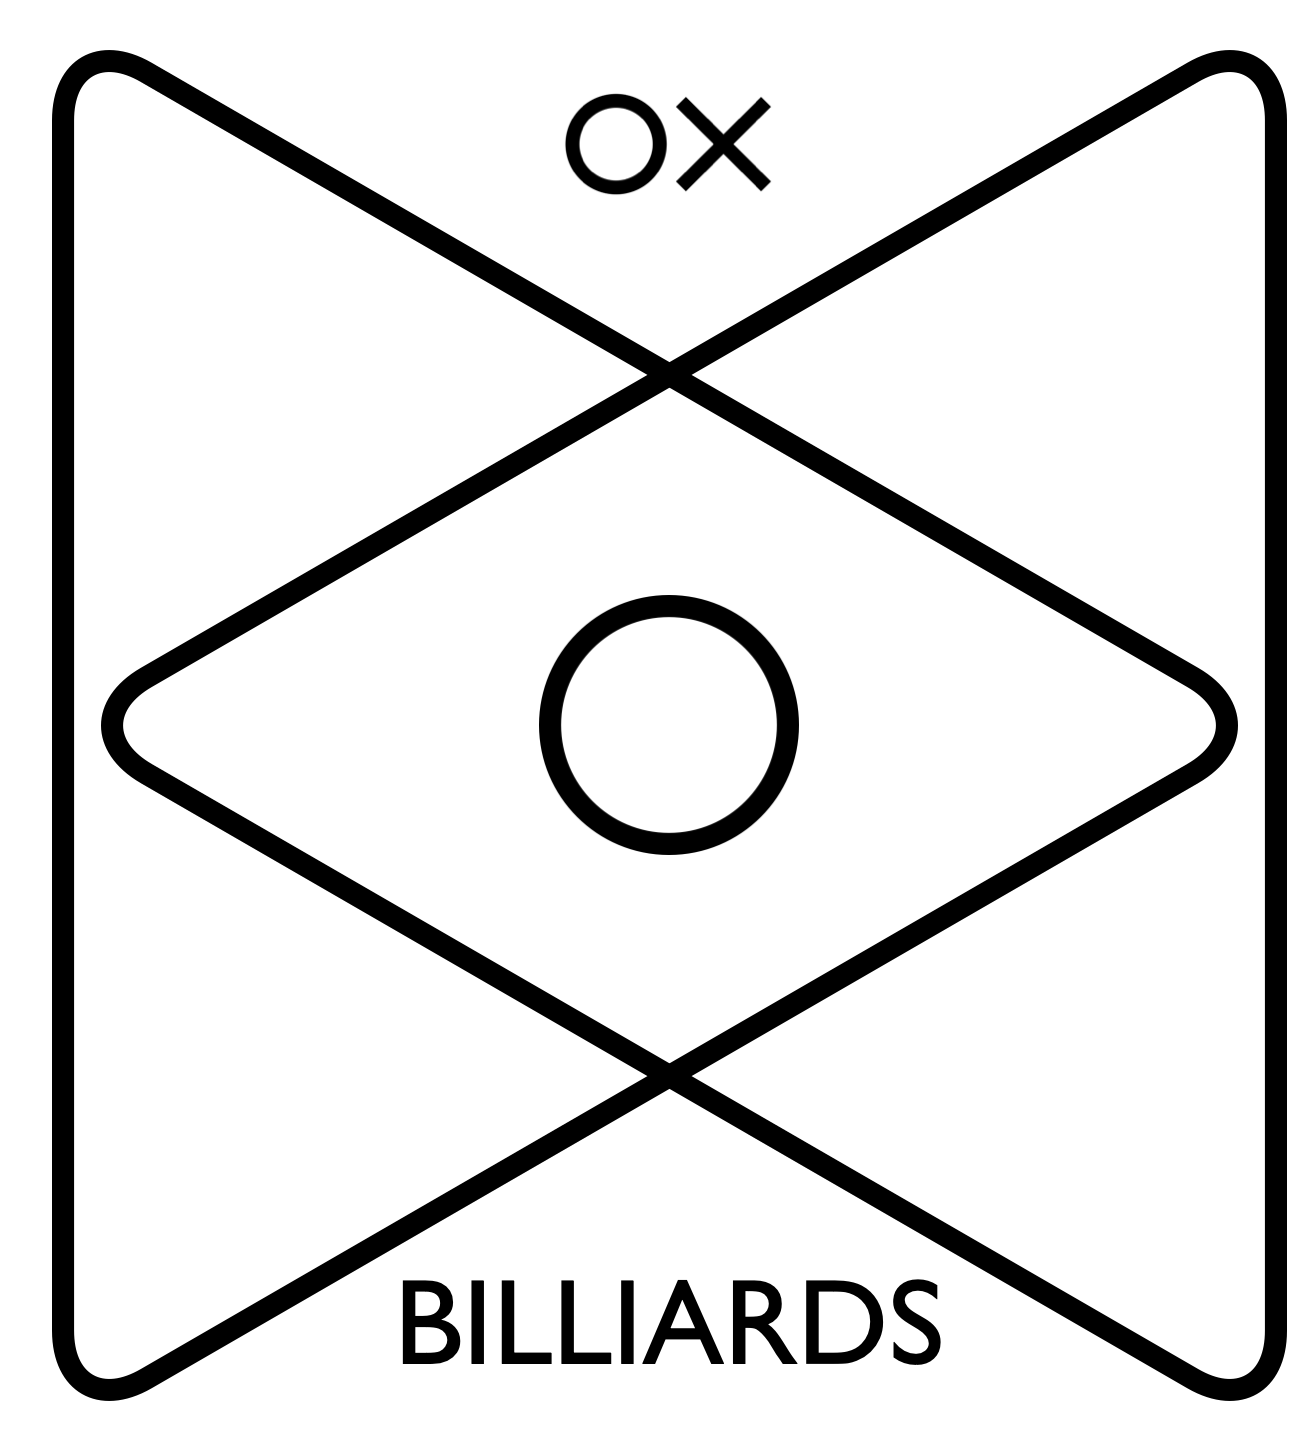 OX BILLIARDS